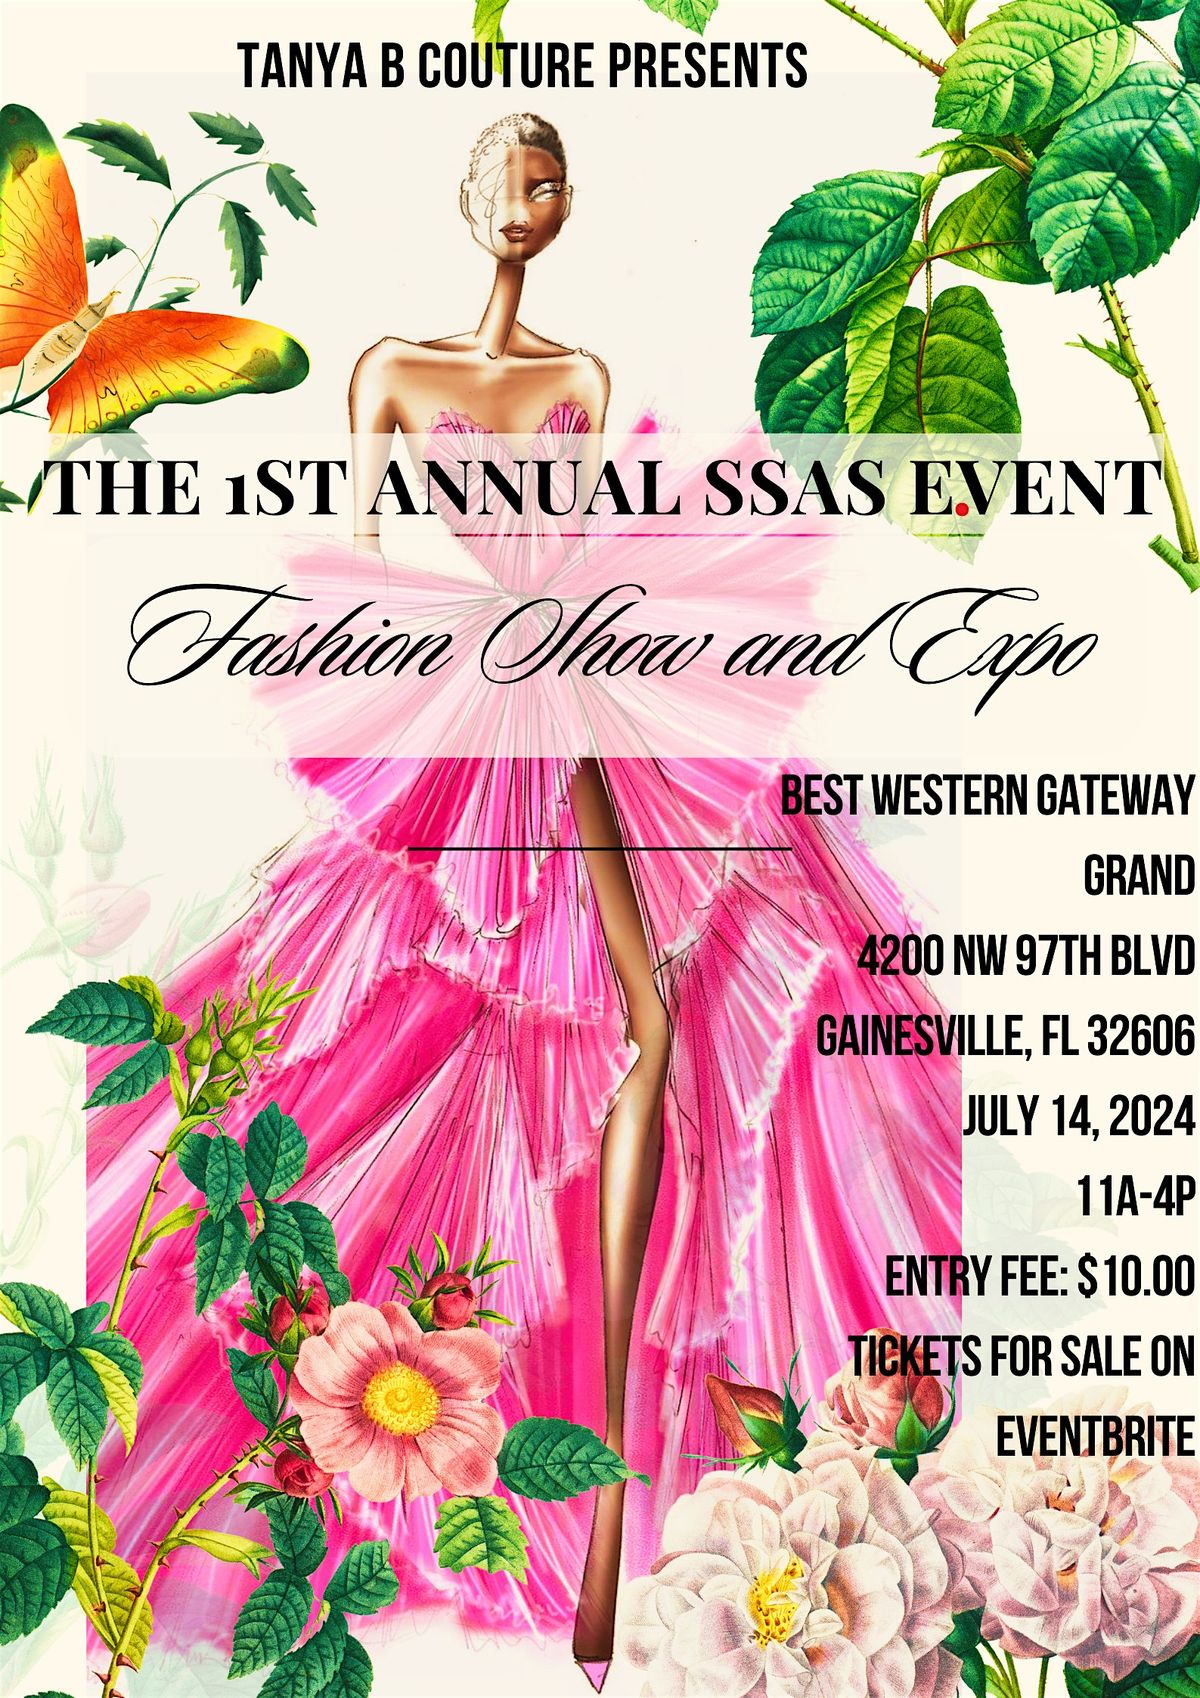 The SSAS Event: Fashion Show and Vendor Expo